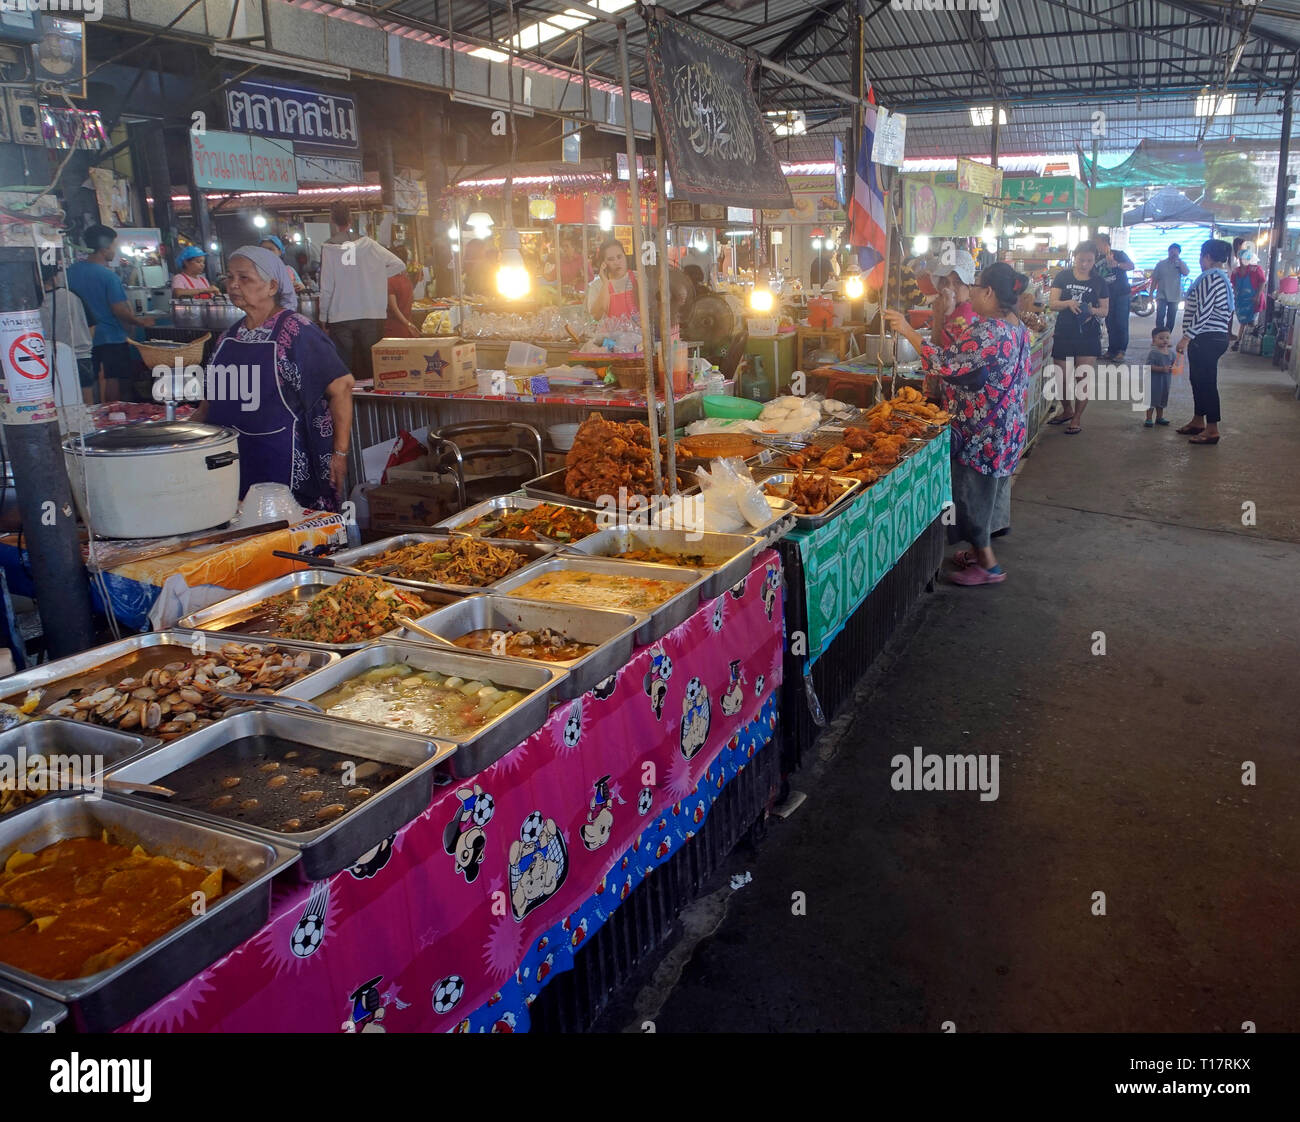 Thailand street food market -Fotos und -Bildmaterial in hoher Auflösung